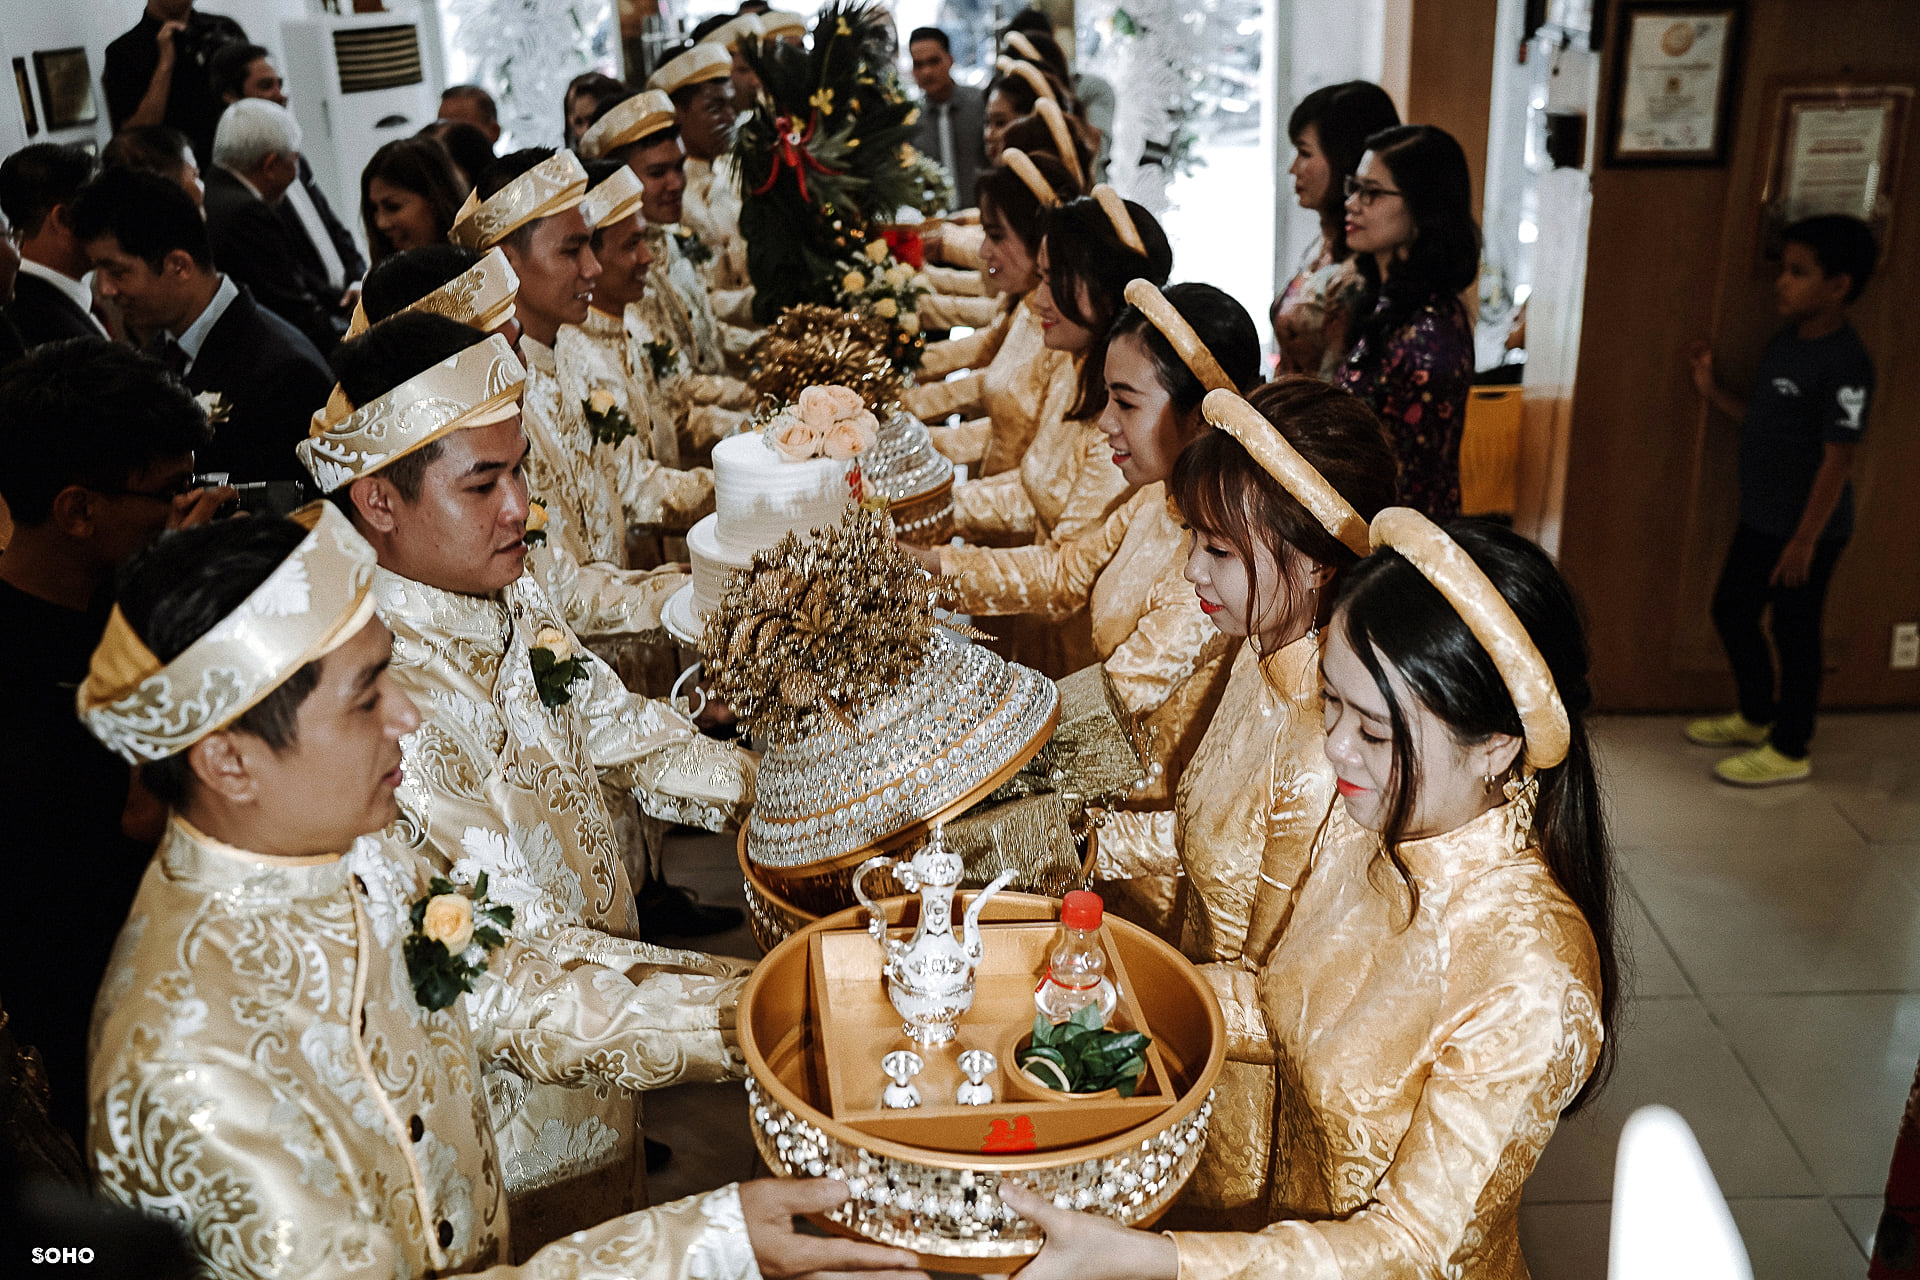 The Wedding Day | Vu & Sinh at Làng Yến Mai Sinh, Nha Trang, VN